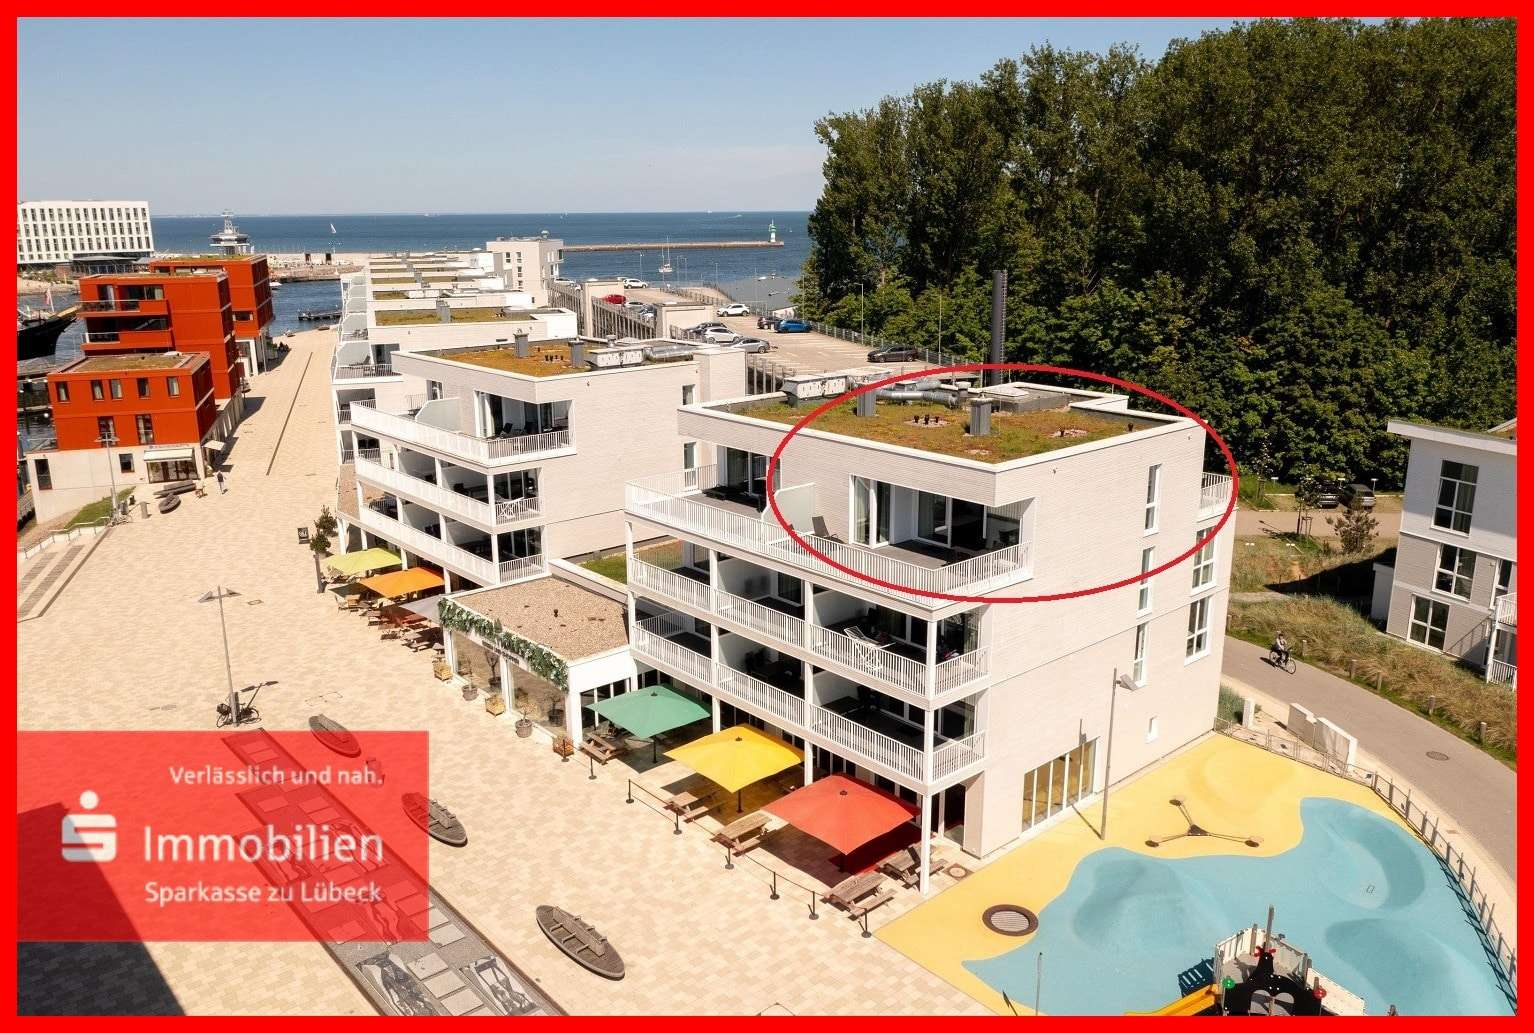 Priwallpromenade 16 - Penthouse-Wohnung in 23570 Lübeck mit 96m² kaufen